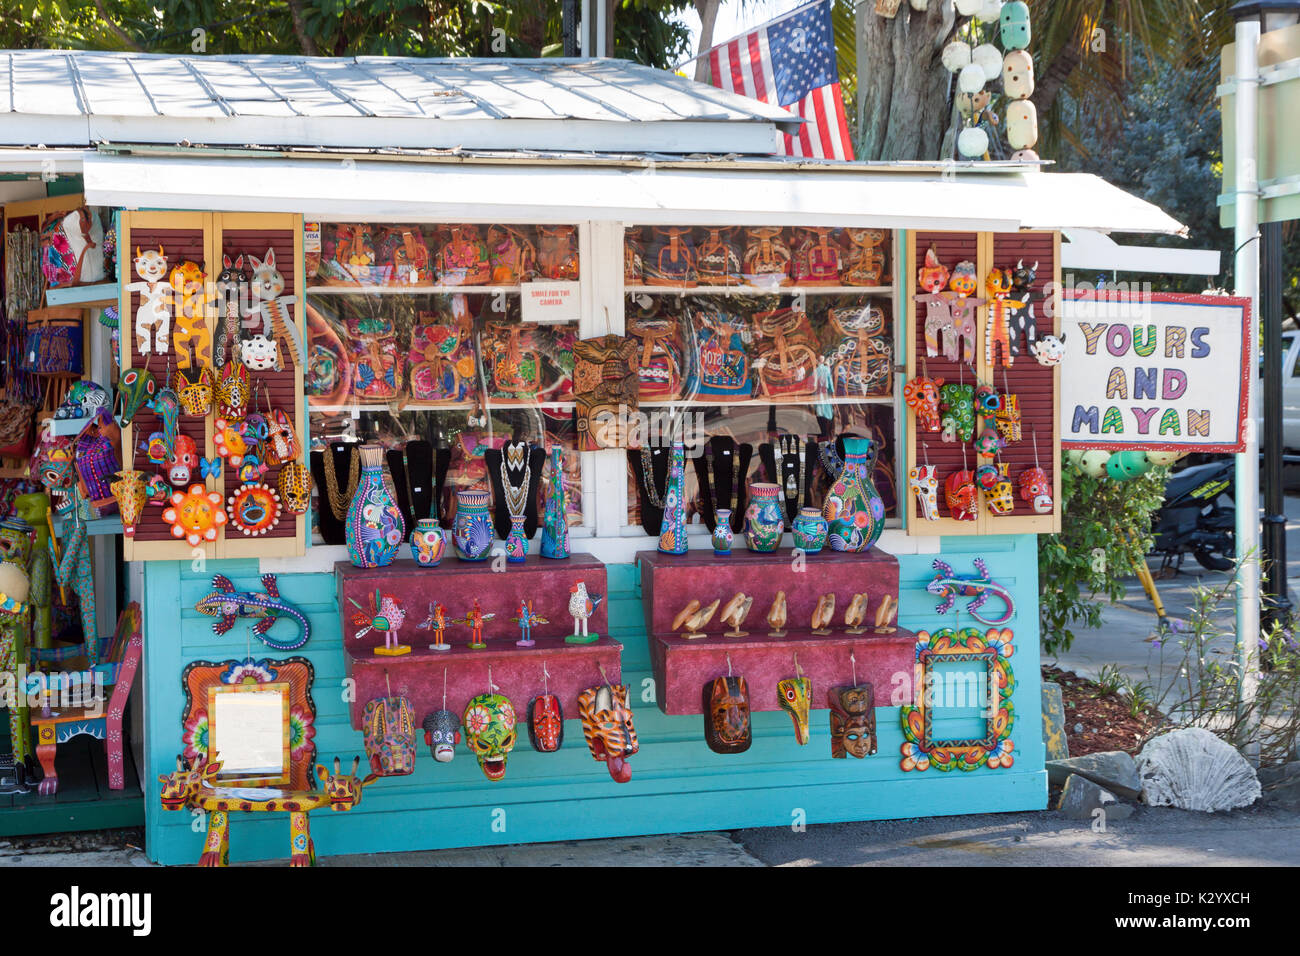 Tuyo y Maya, una tienda en Key West, Florida, vende artesanías importadas desde América Central a través de un comercio justo, ayudando a la gente a ser económicamente independientes. Foto de stock